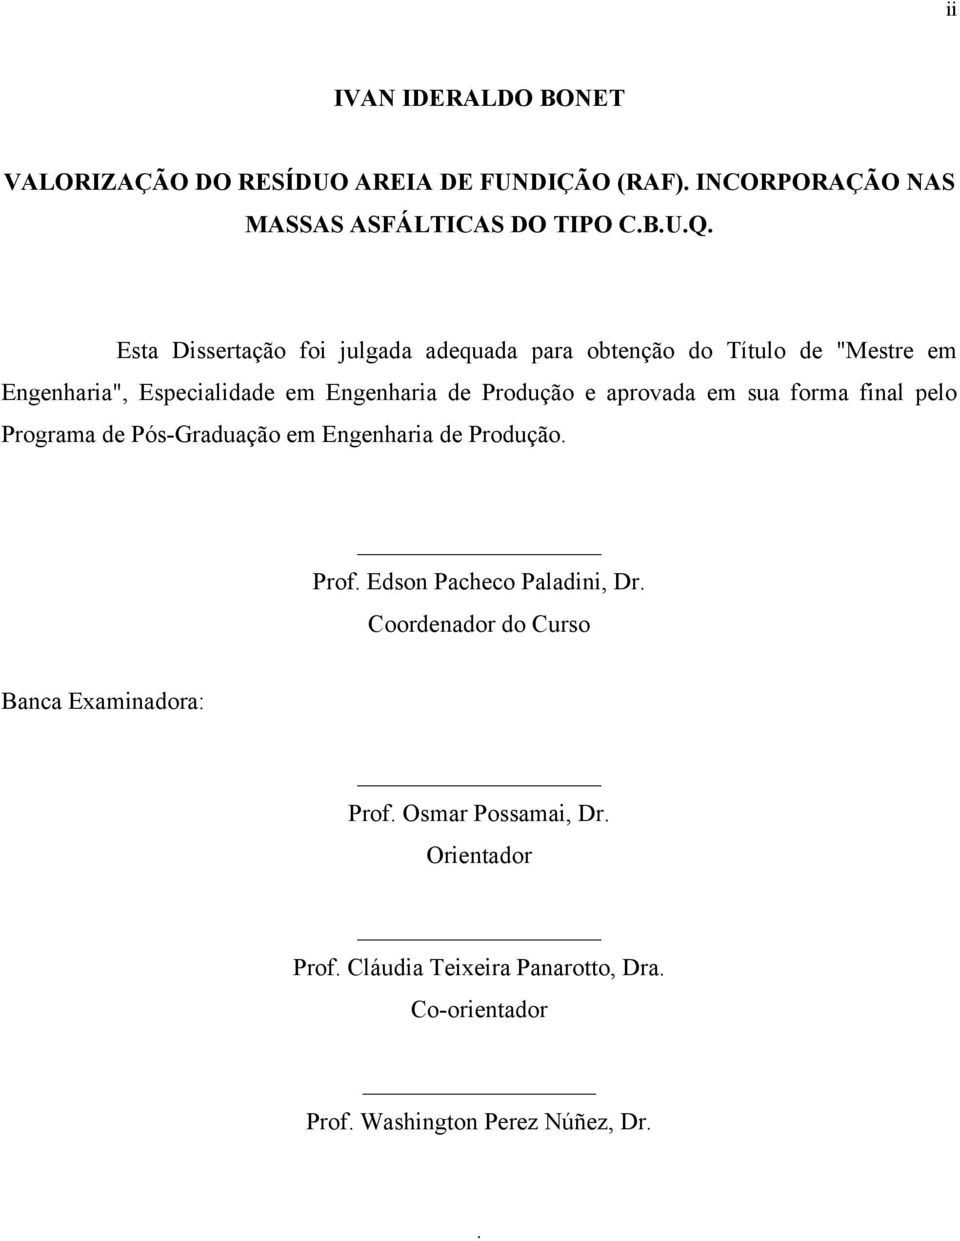 aprovada em sua forma final pelo Programa de Pós-Graduação em Engenharia de Produção. Prof. Edson Pacheco Paladini, Dr.